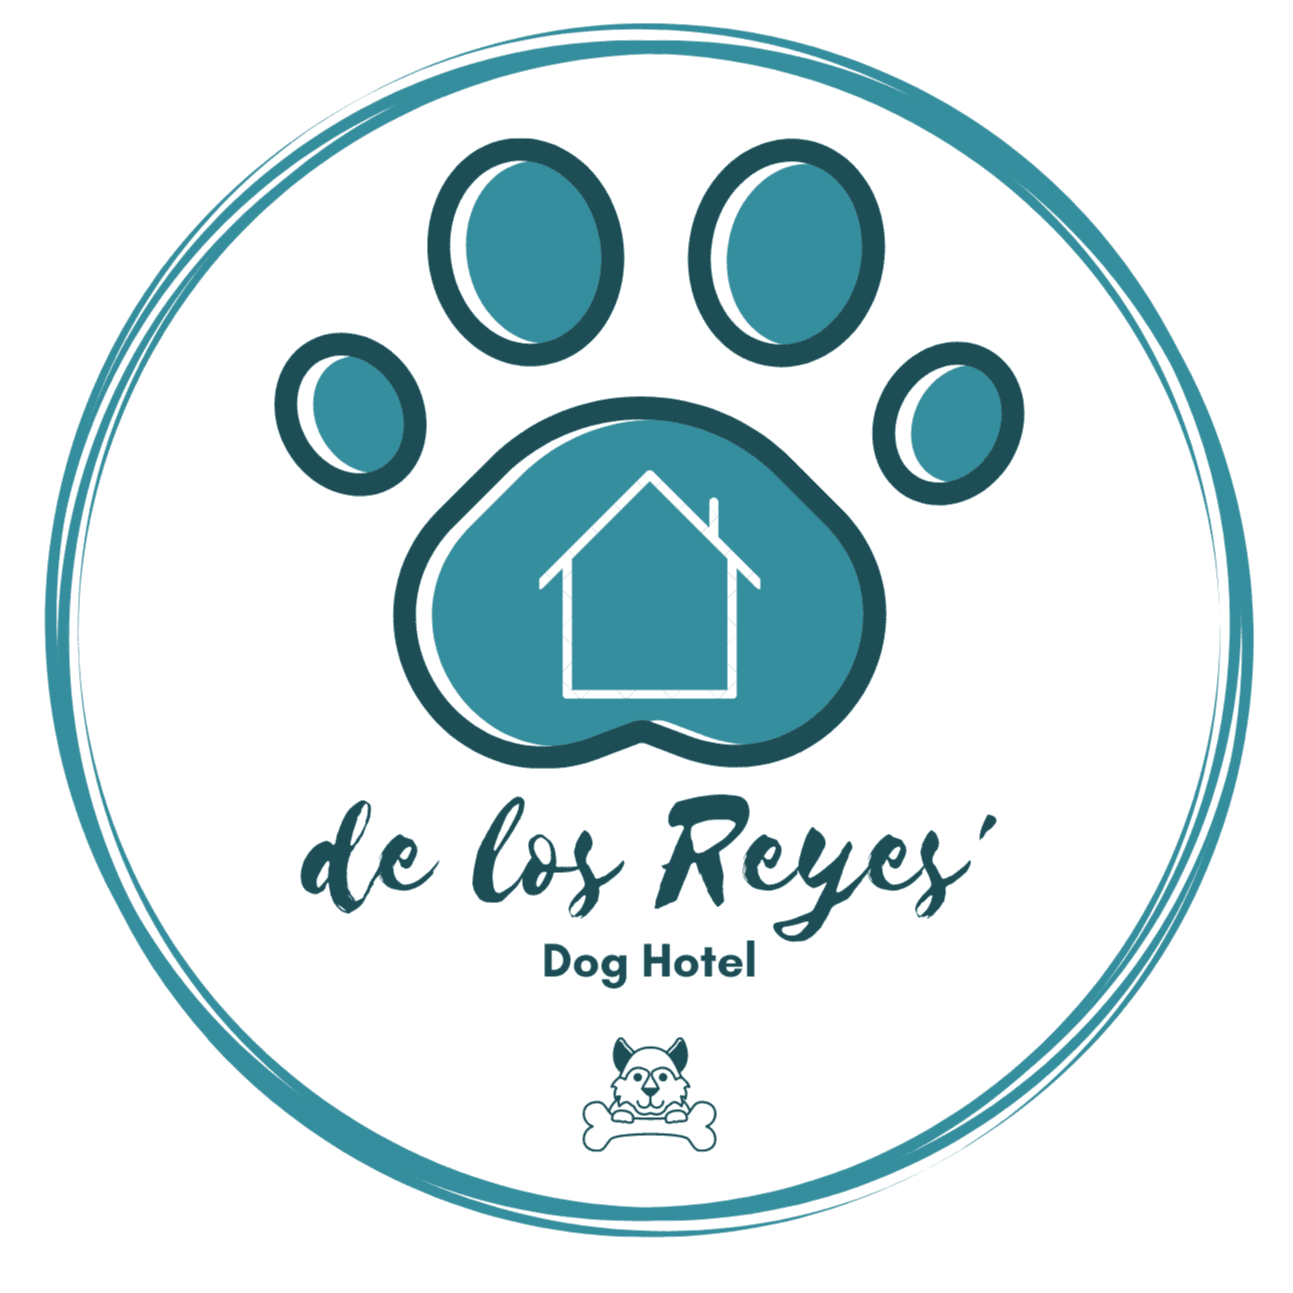 De Los Reyes'. Dog Hotel